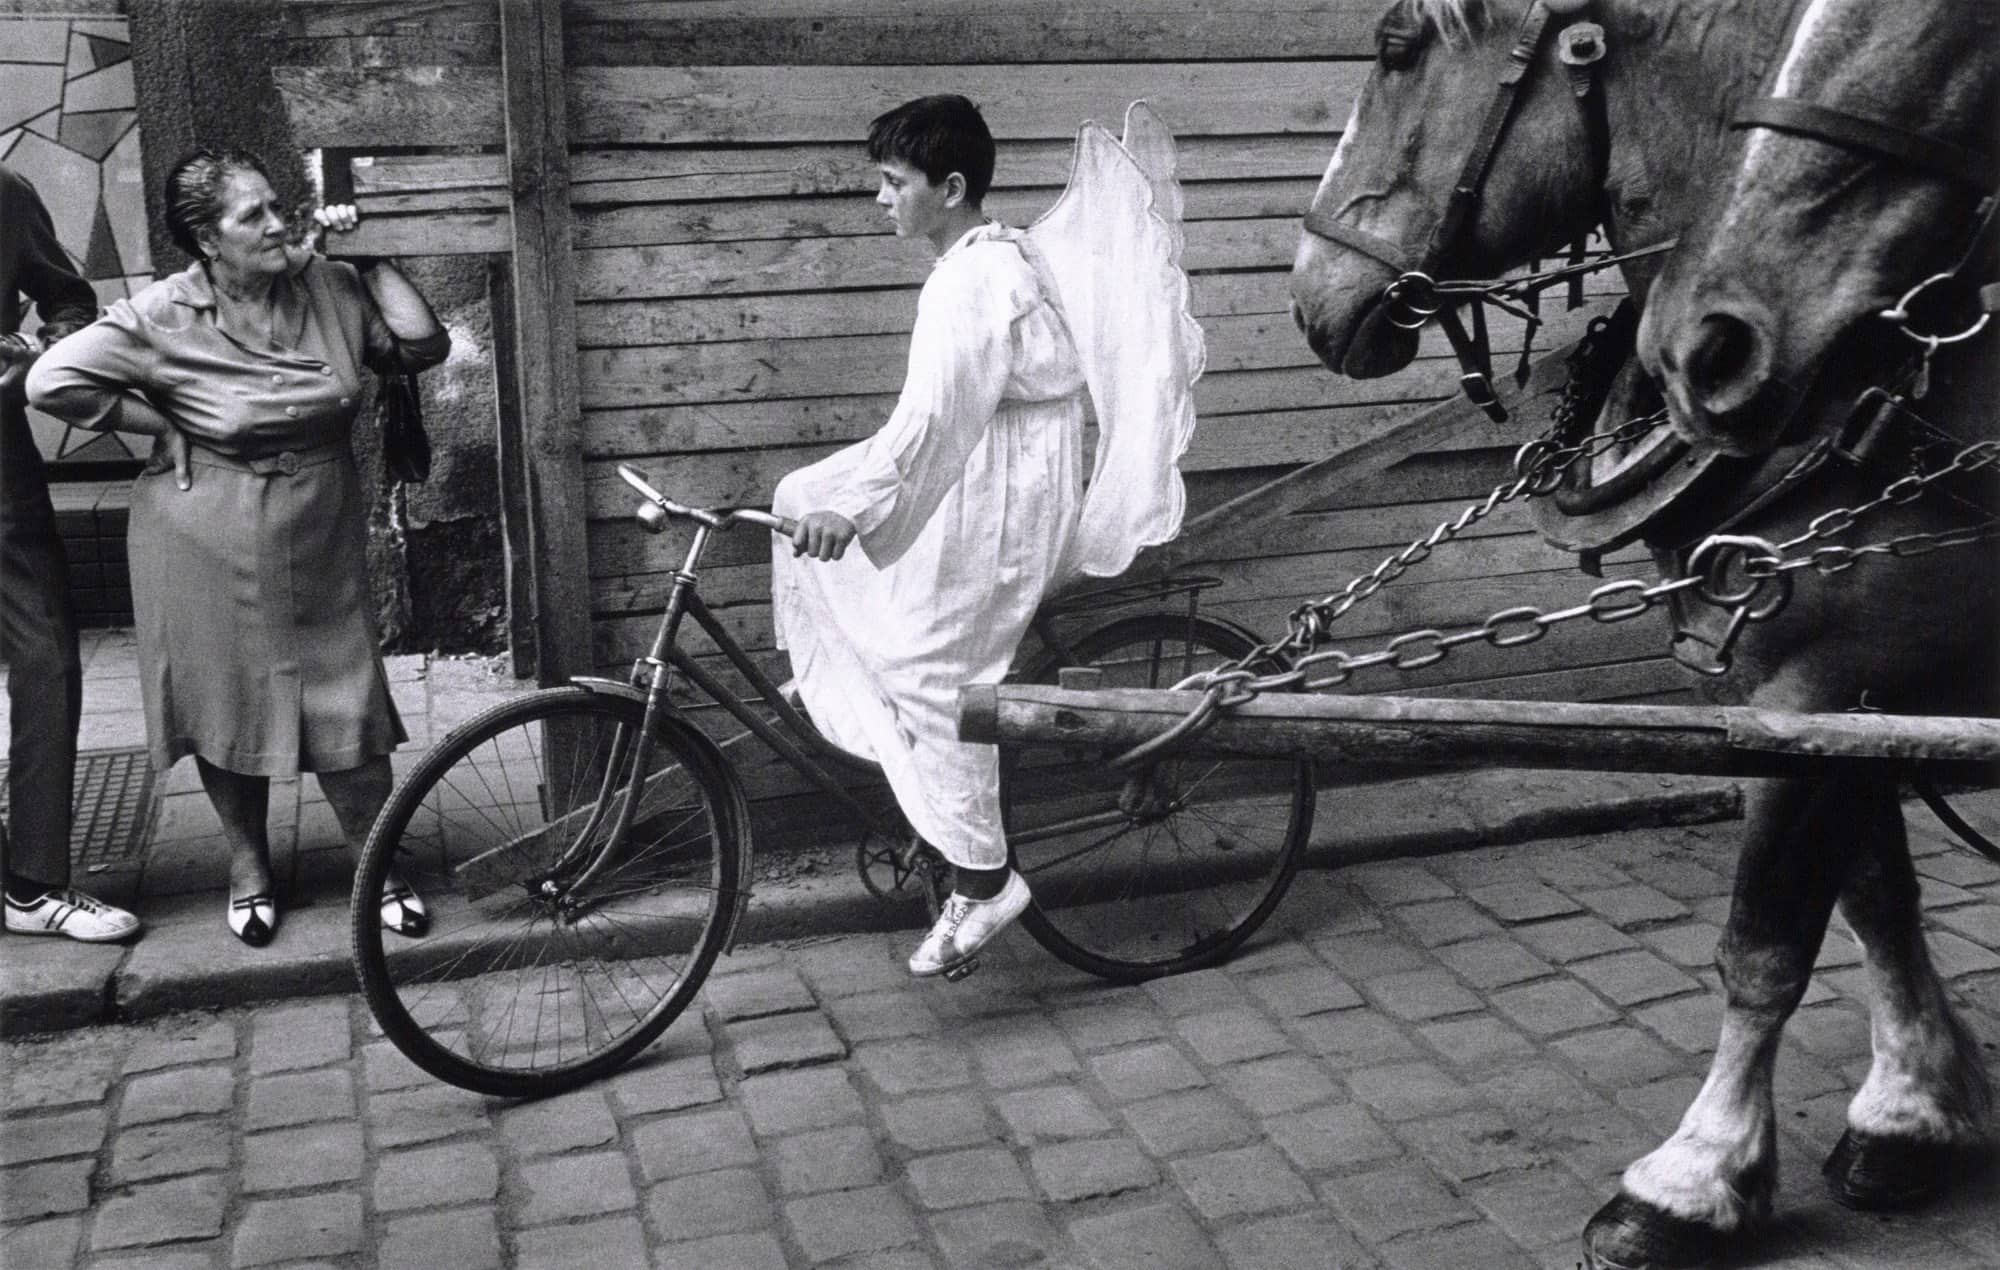 Josef Koudelka's angel boy on bicycle